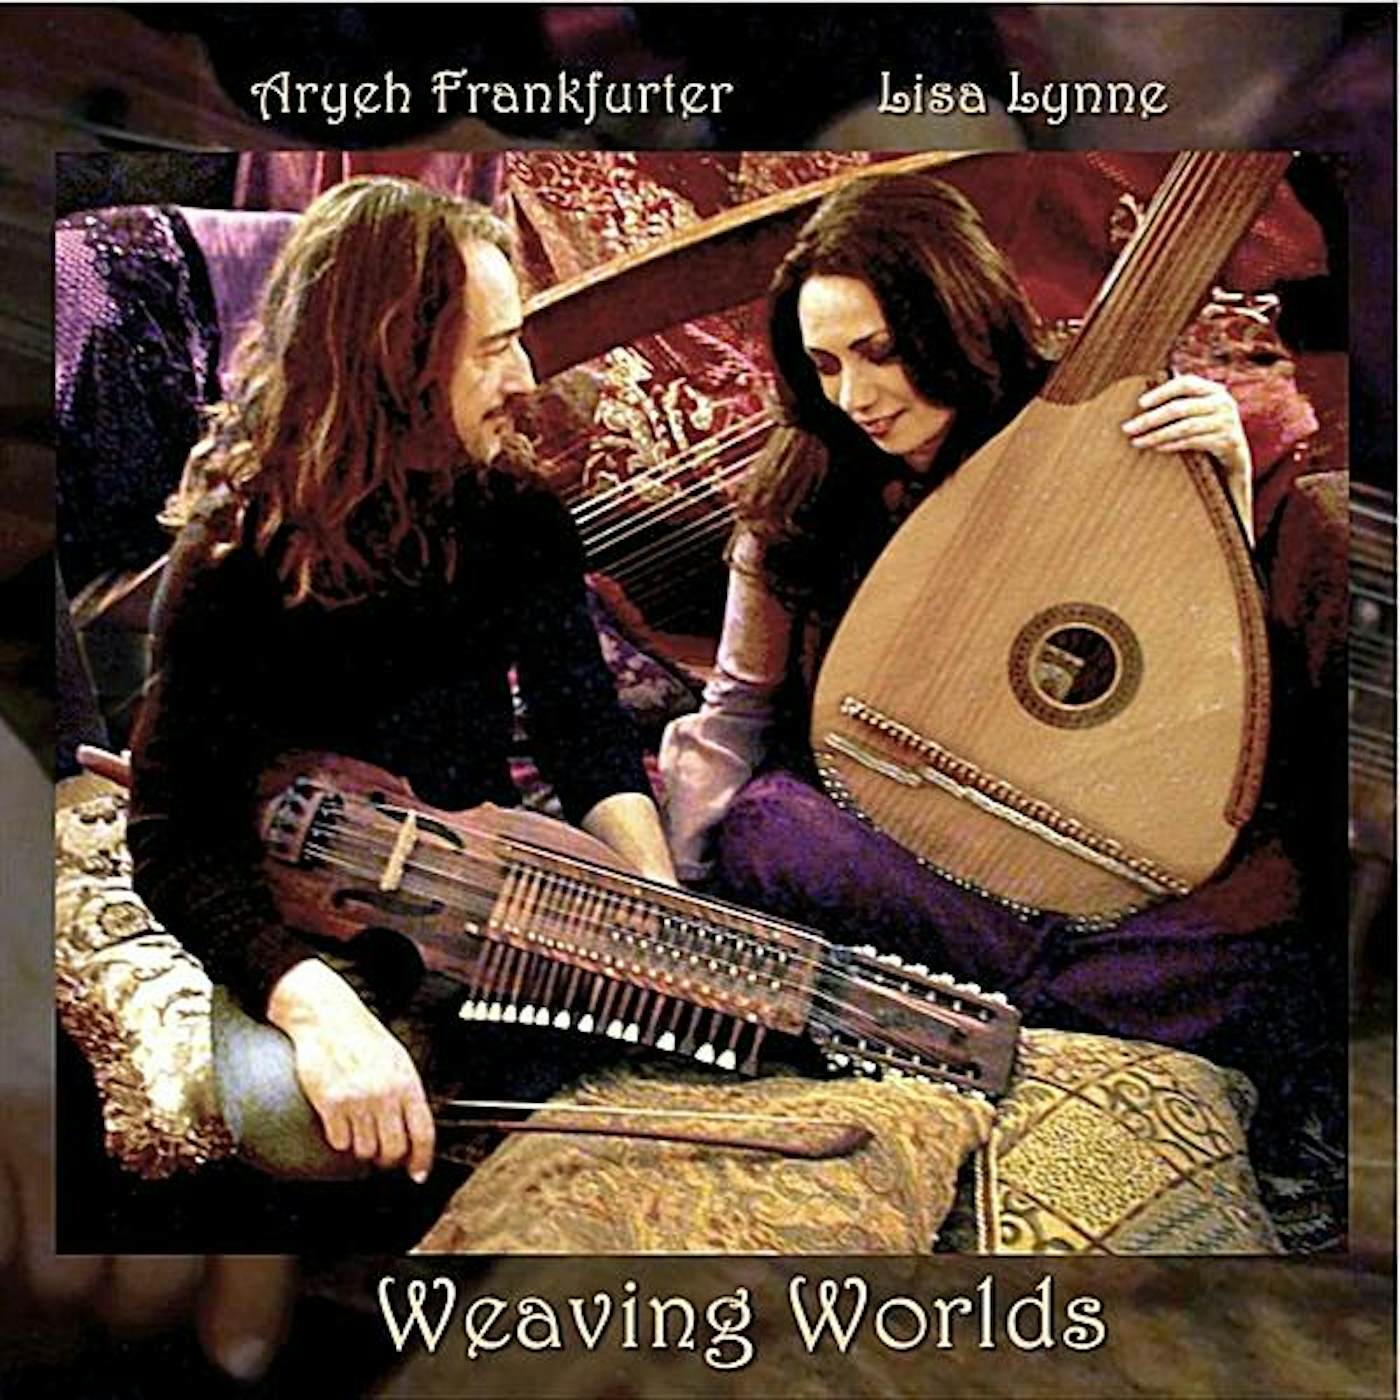 Lisa Lynne WEAVING WORLDS CD